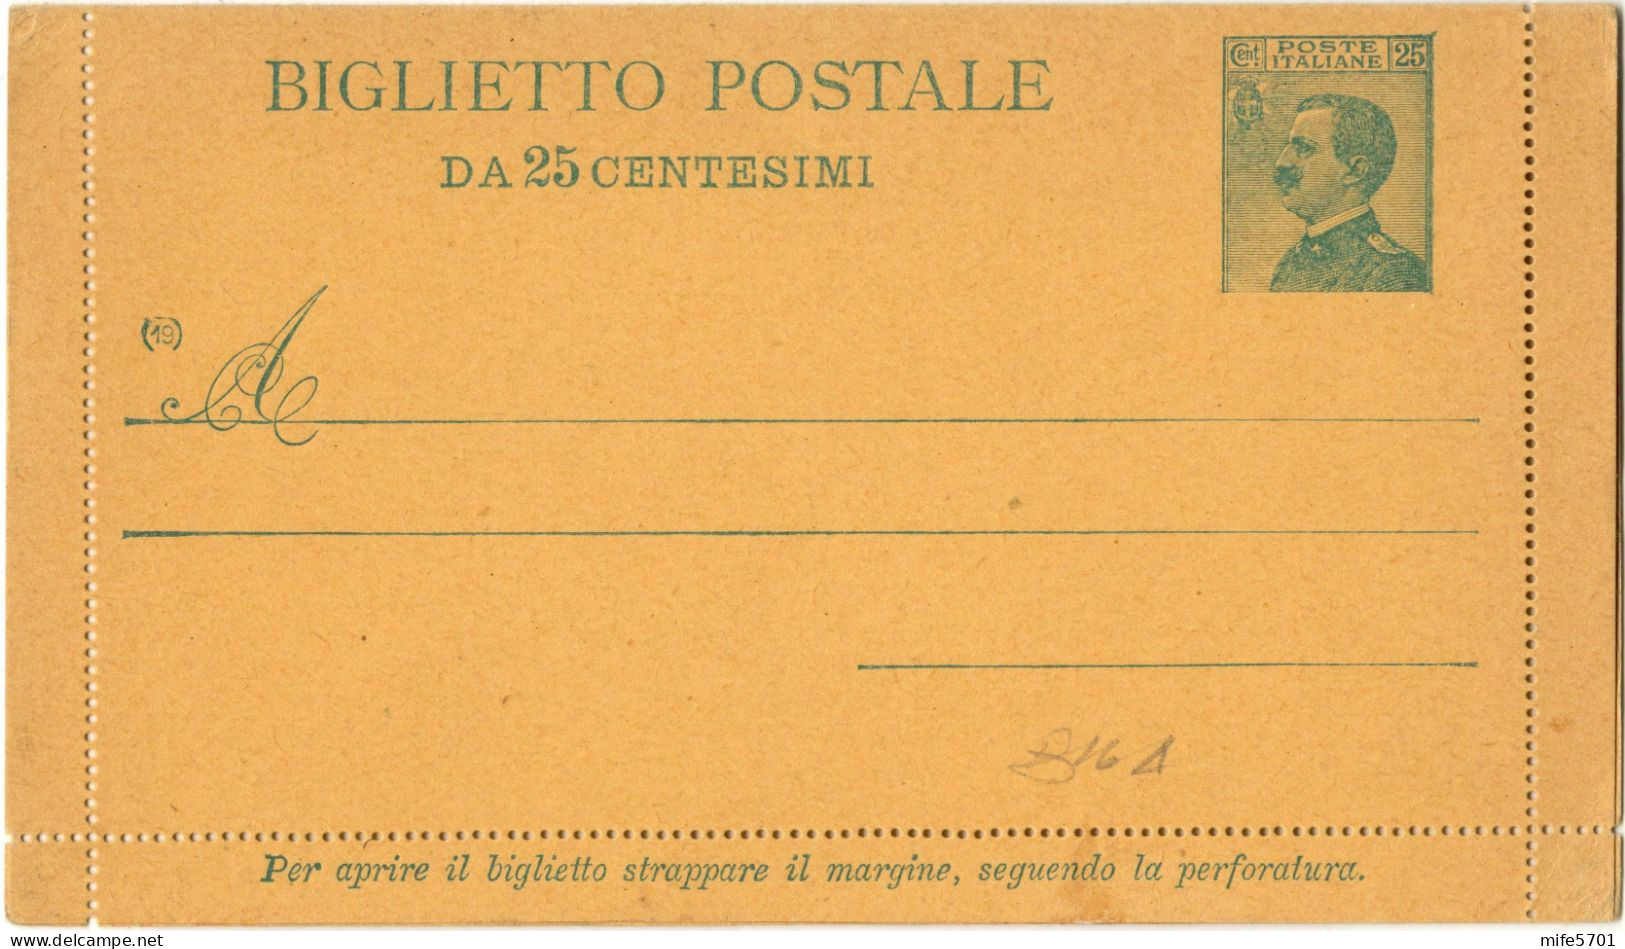 REGNO D'ITALIA B16A - 1919 BIGLIETTO POSTALE TIPO 'MICHETTI' DA C. 25 V.E.III VOLTO A SINISTRA - NUOVO FILAGRANO B16A - Ganzsachen